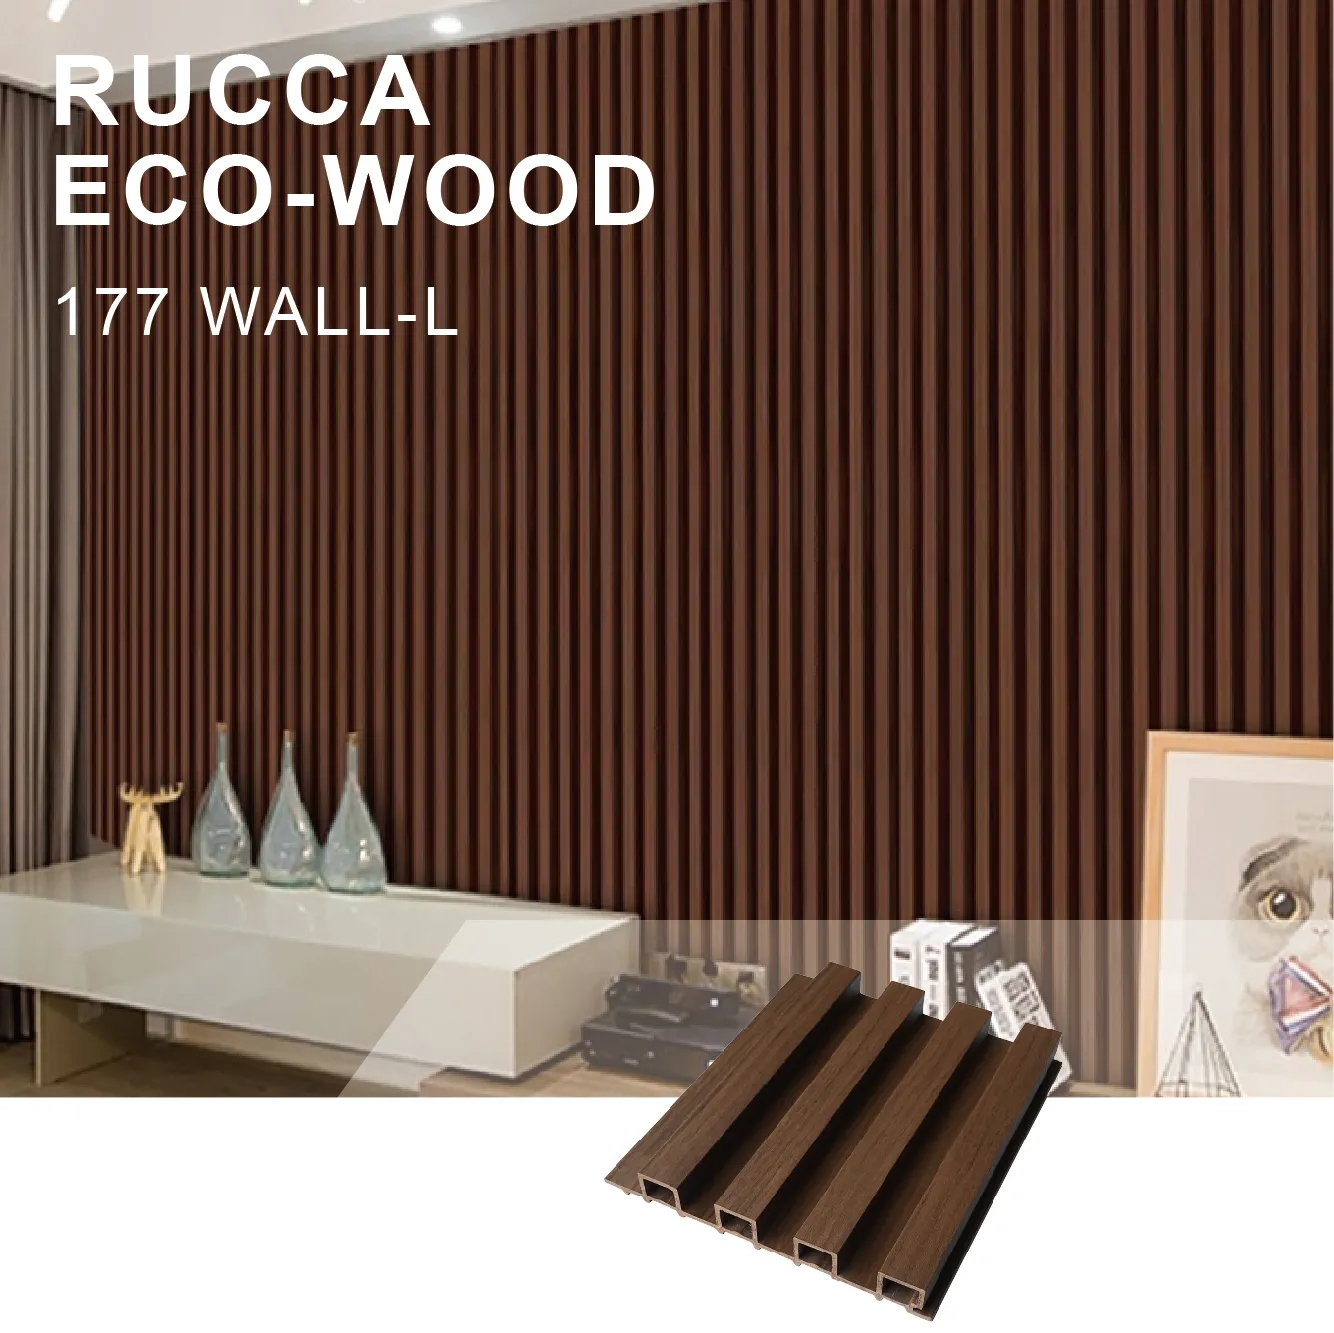 Rucca facile à installer noyer couleur Eco bois stratifié revêtement mural décoratif 177x21.5 panneaux WPC